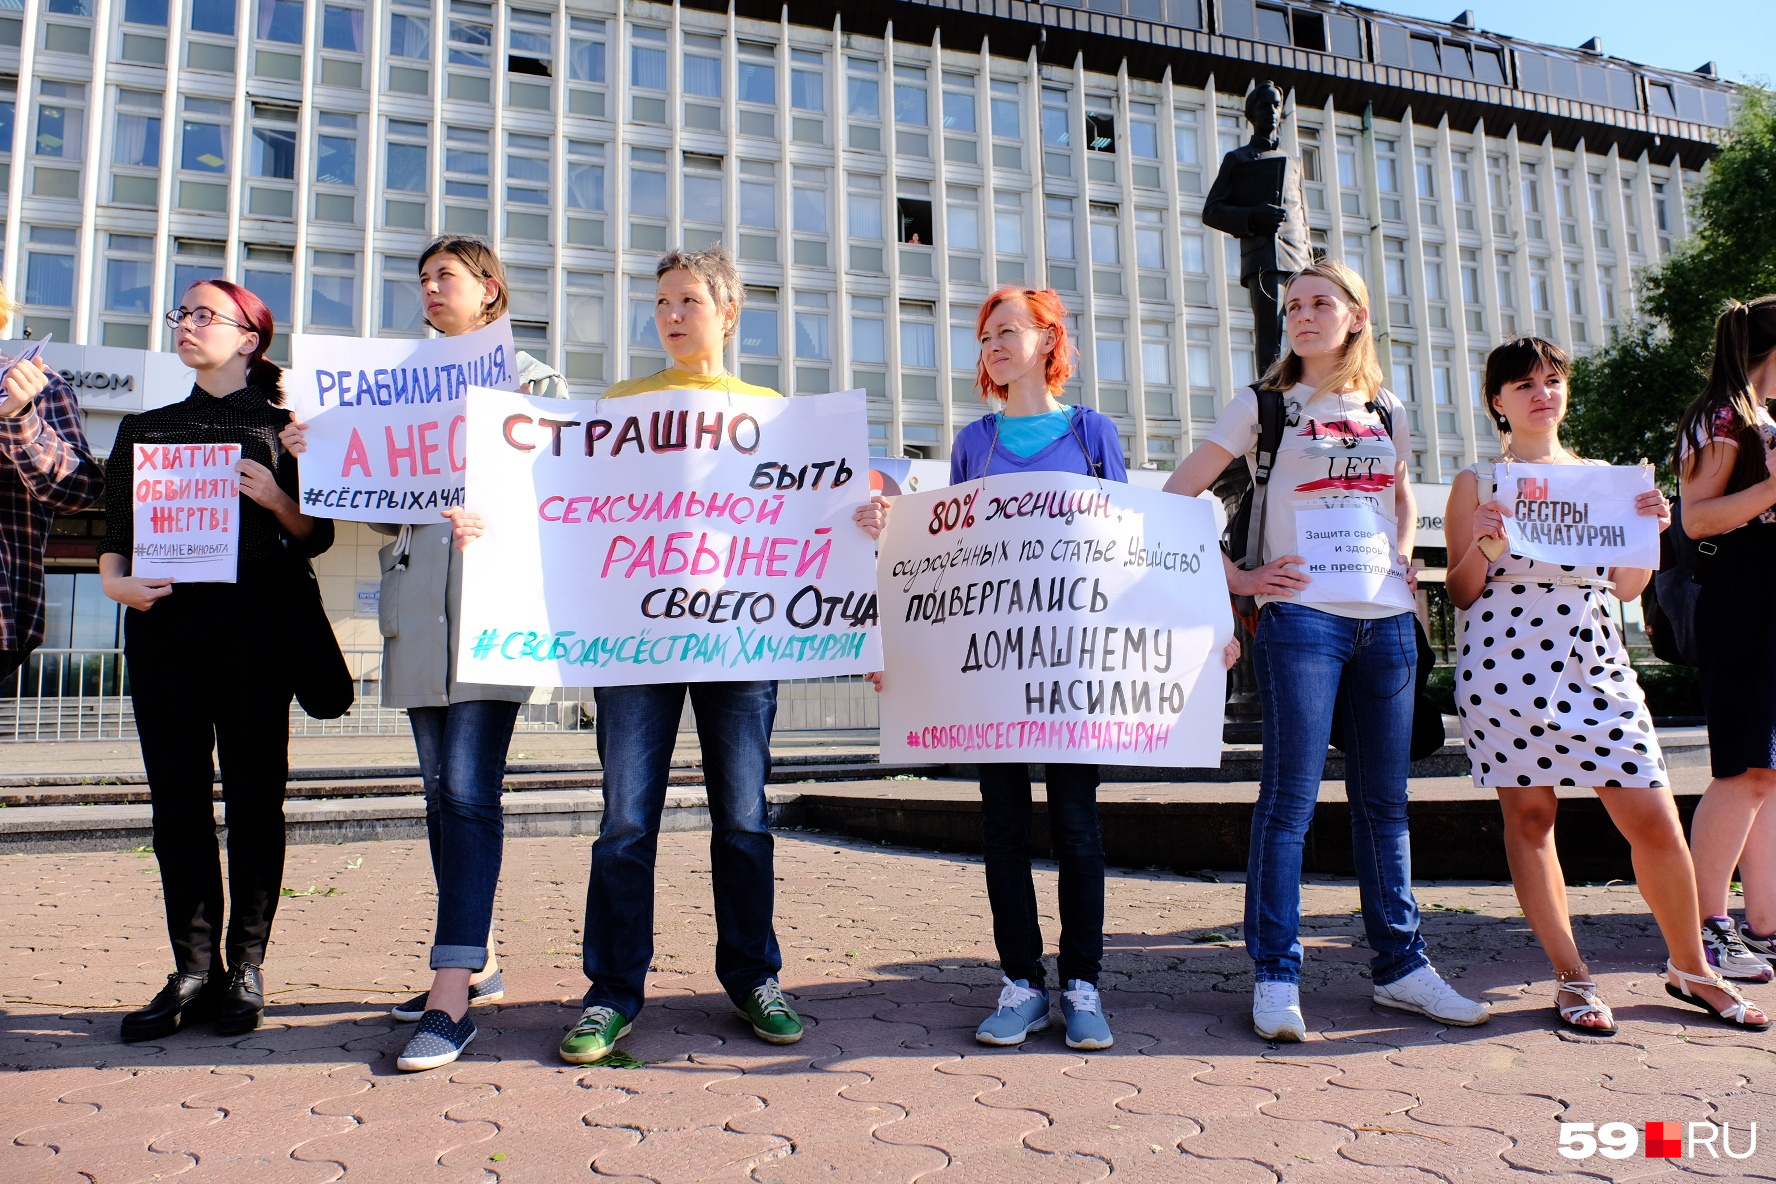 На фото Юлия Бабинцева стоит с плакатом, что 80% женщин подвергаются домашнему насилию